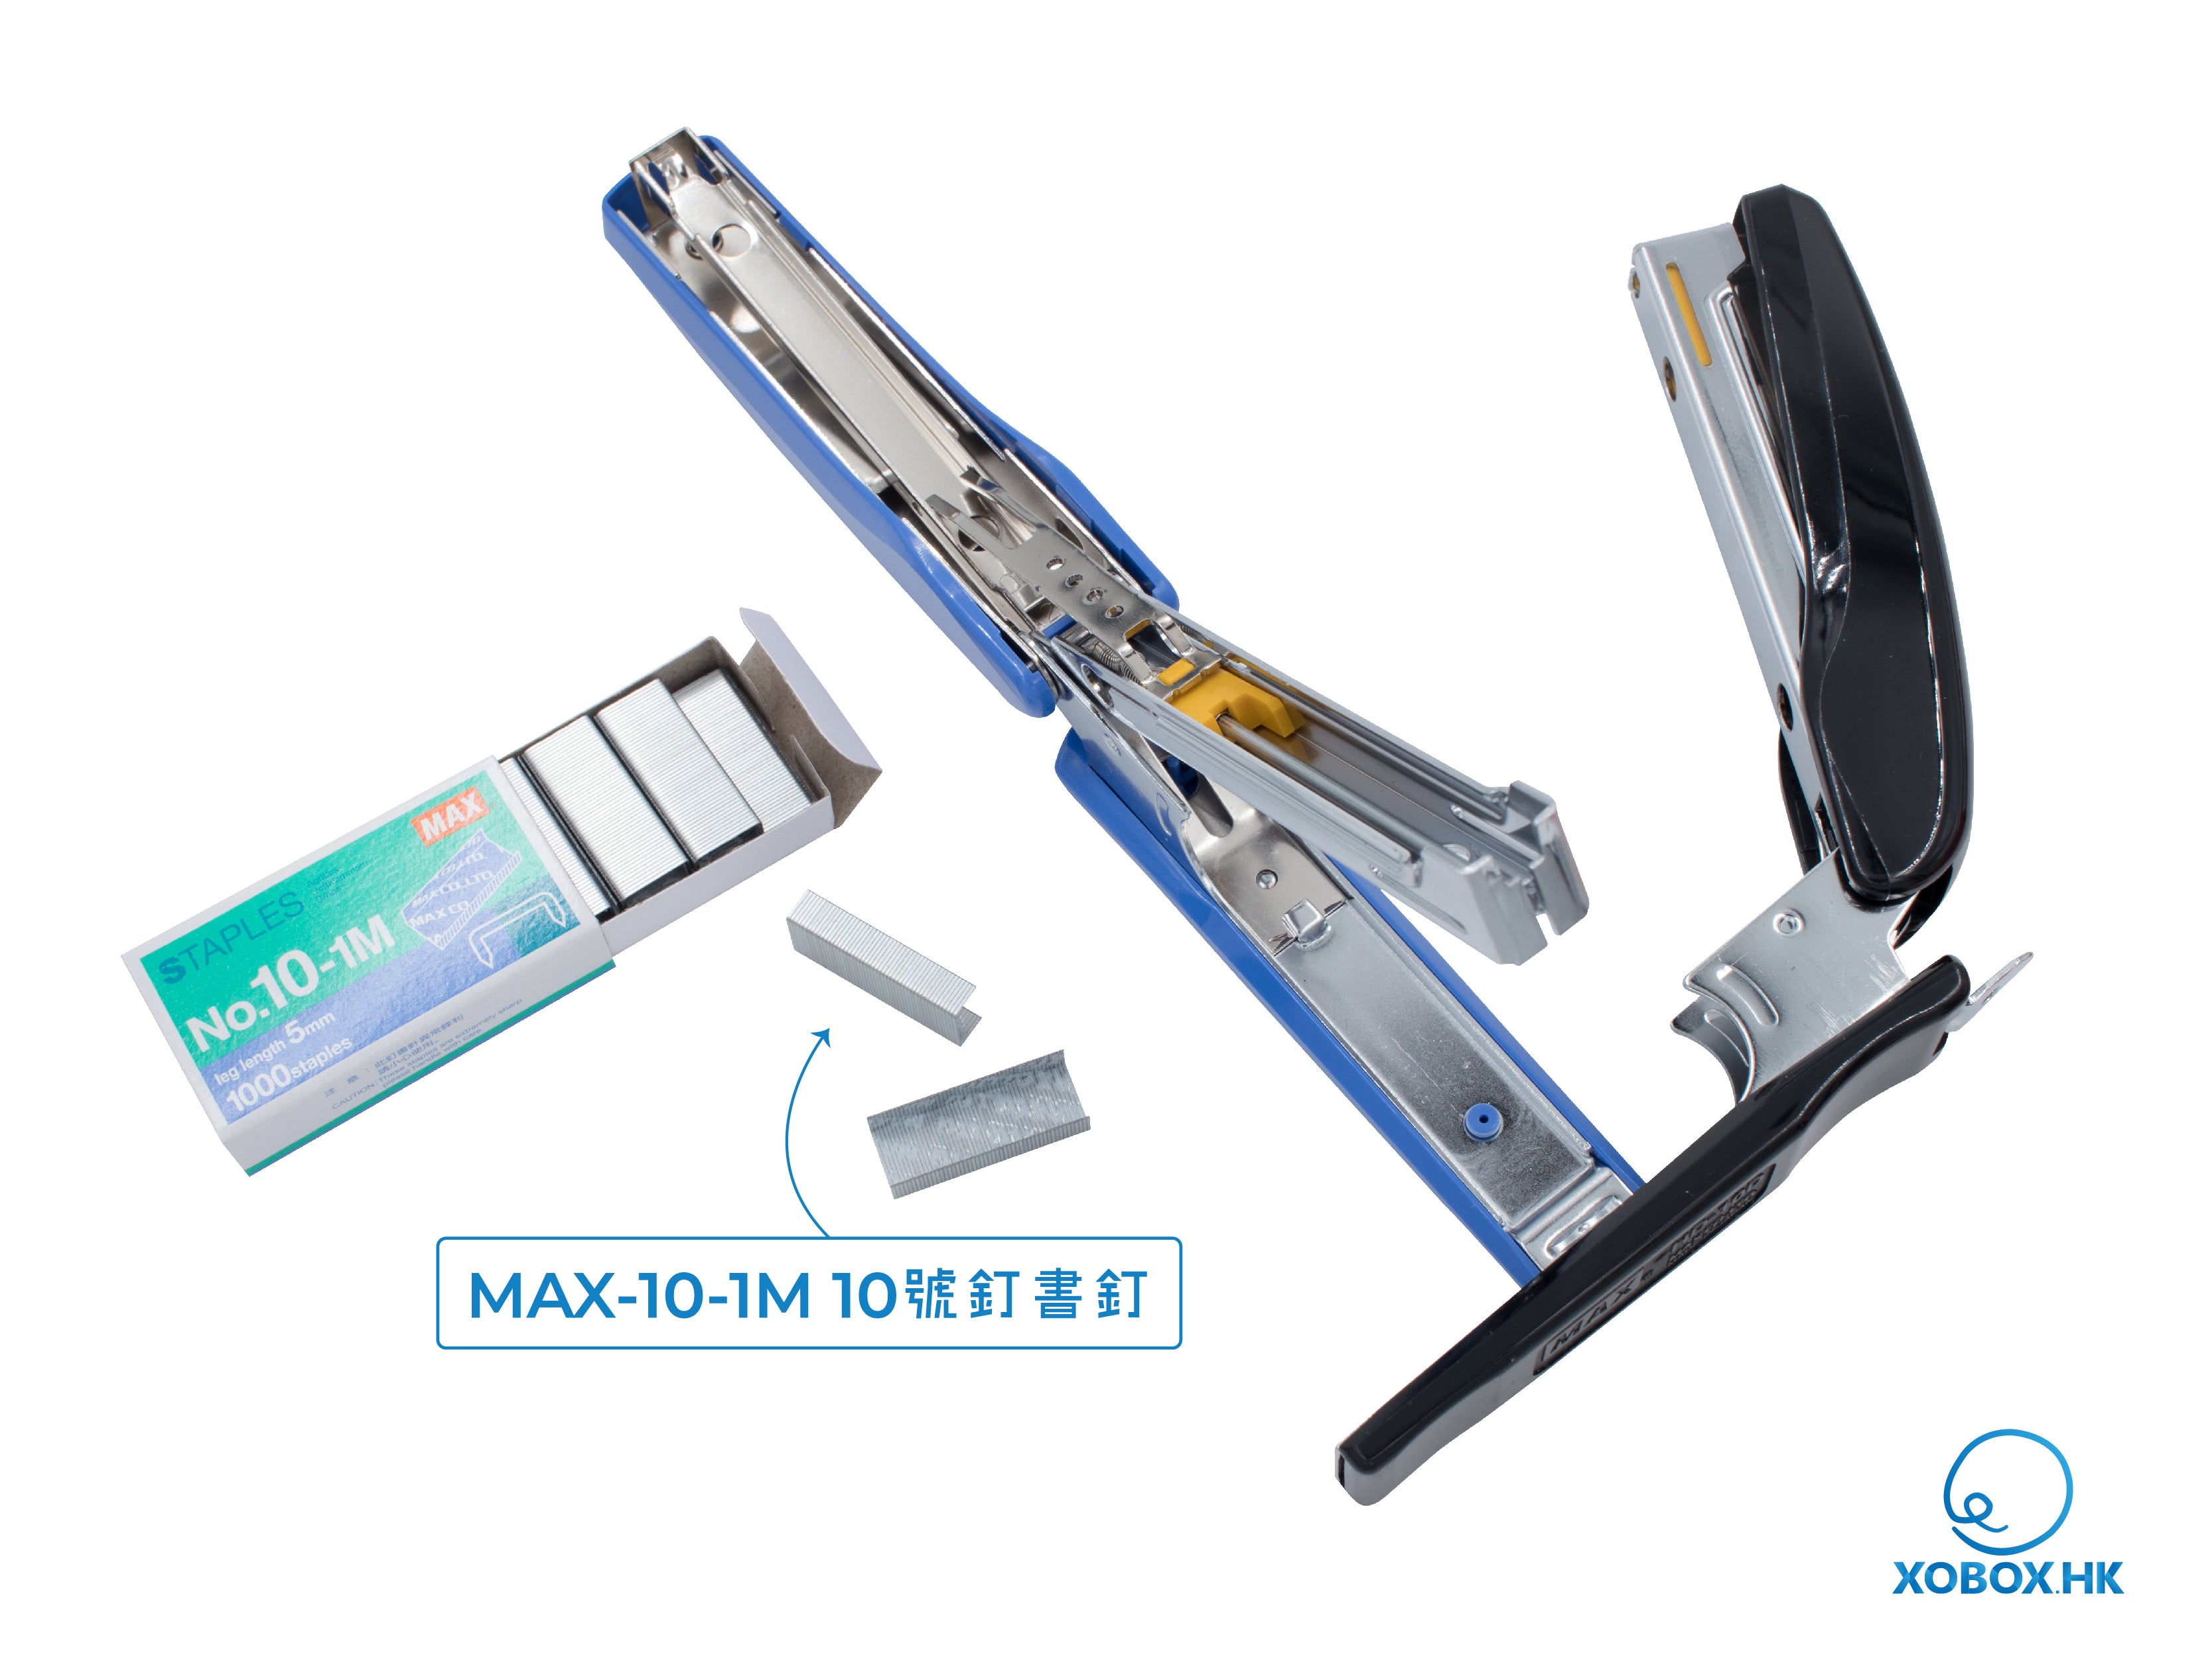 MAX-HD-10D 標準型輕巧釘書機(連起釘器)